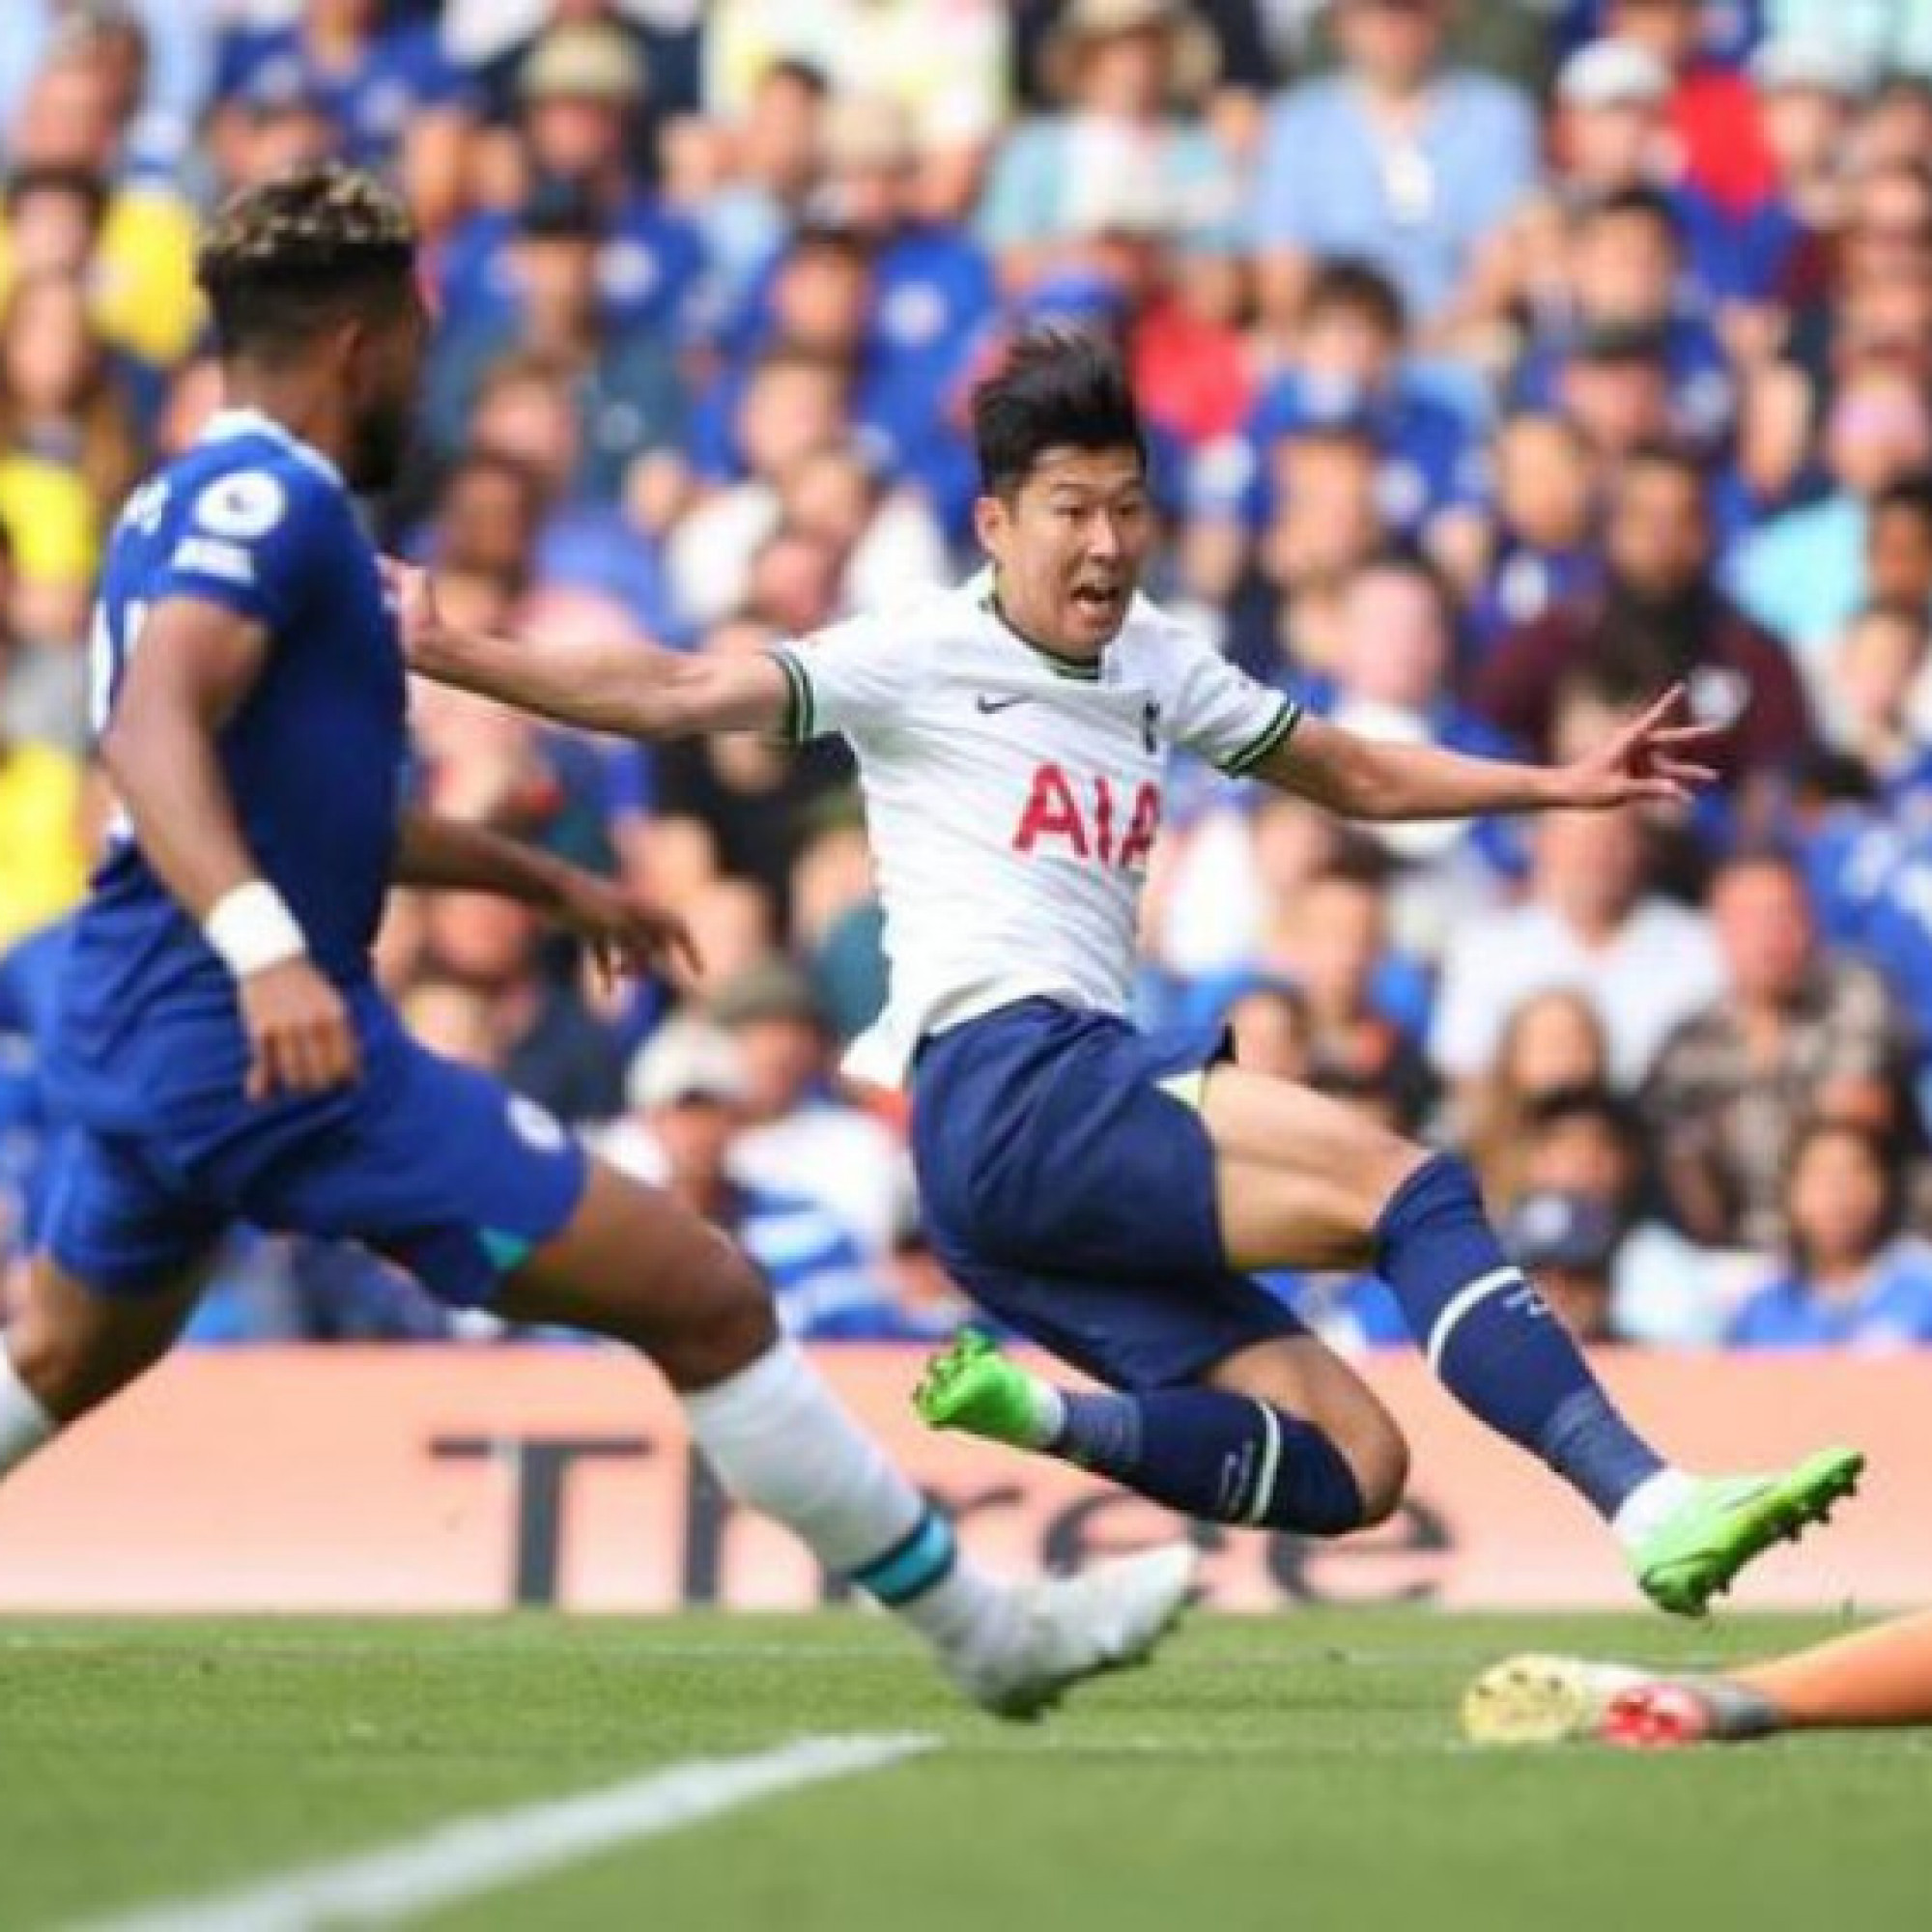  - Cực nóng BXH Ngoại hạng Anh: Tottenham thoát thua Chelsea, ngôi đầu đổi chủ